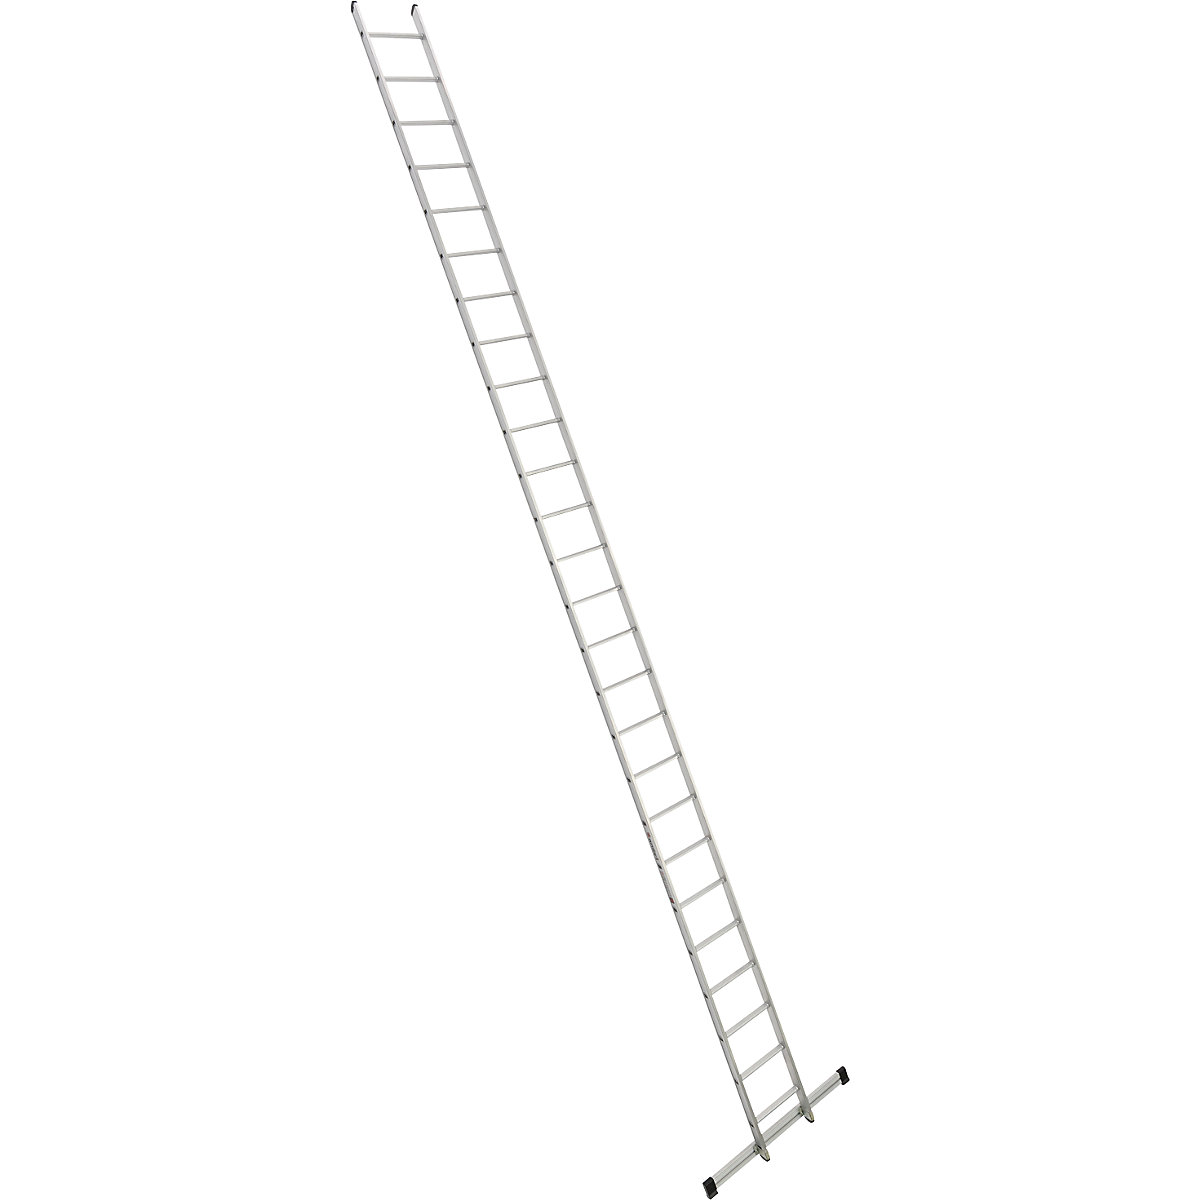 Príložný rebrík s priečkami – euroline, šírka 410 mm, 26 priečok s priečnikom-7